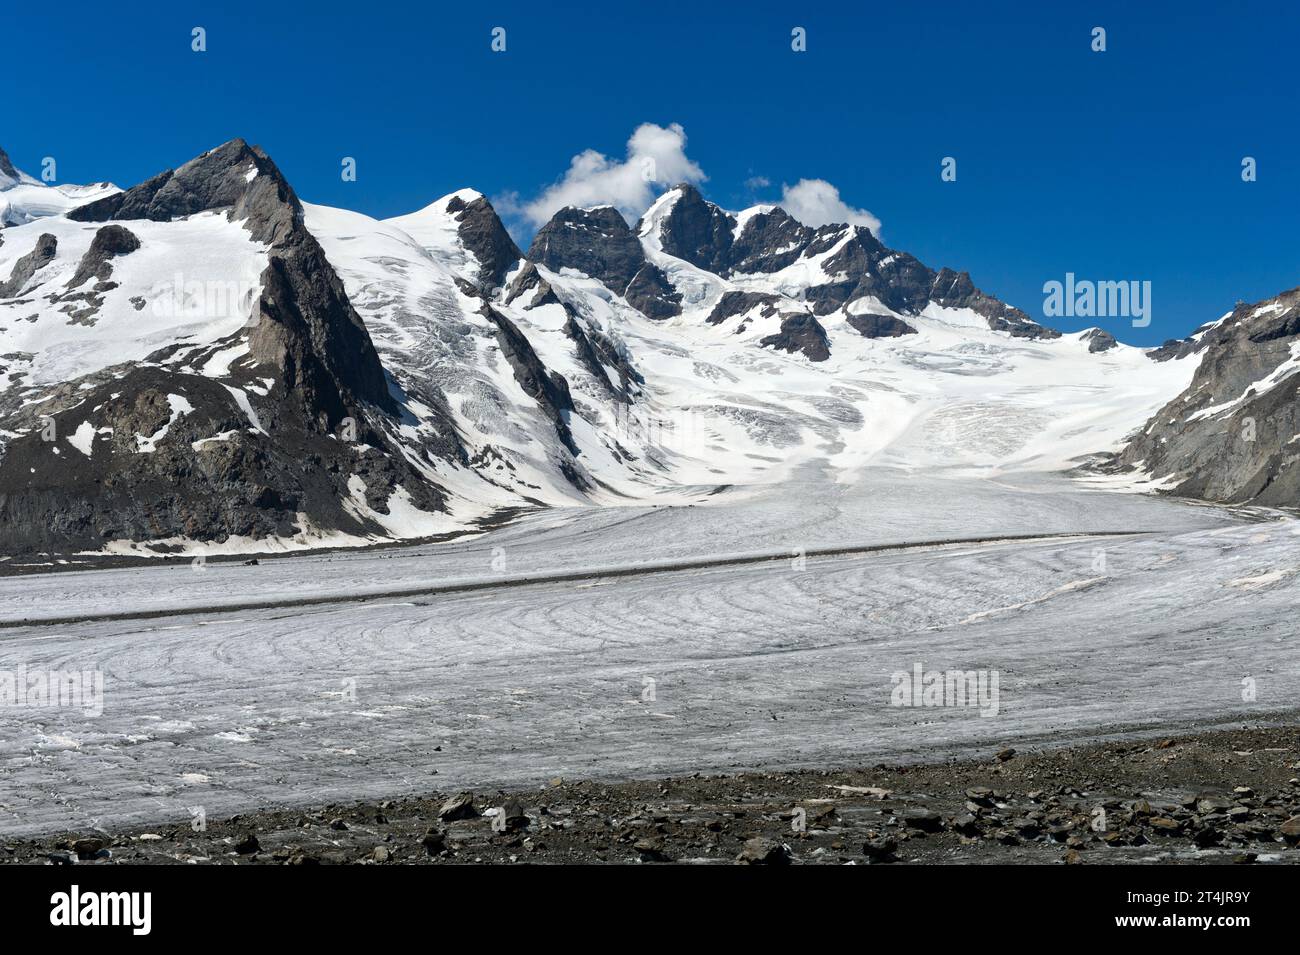 Vue depuis la zone de glace Konkordiaplatz sur le glacier Jungfraufirn jusqu'au sommet de la Jungfrau, région d'Aletsch, Grindelwald, Oberland bernois, Suisse Banque D'Images